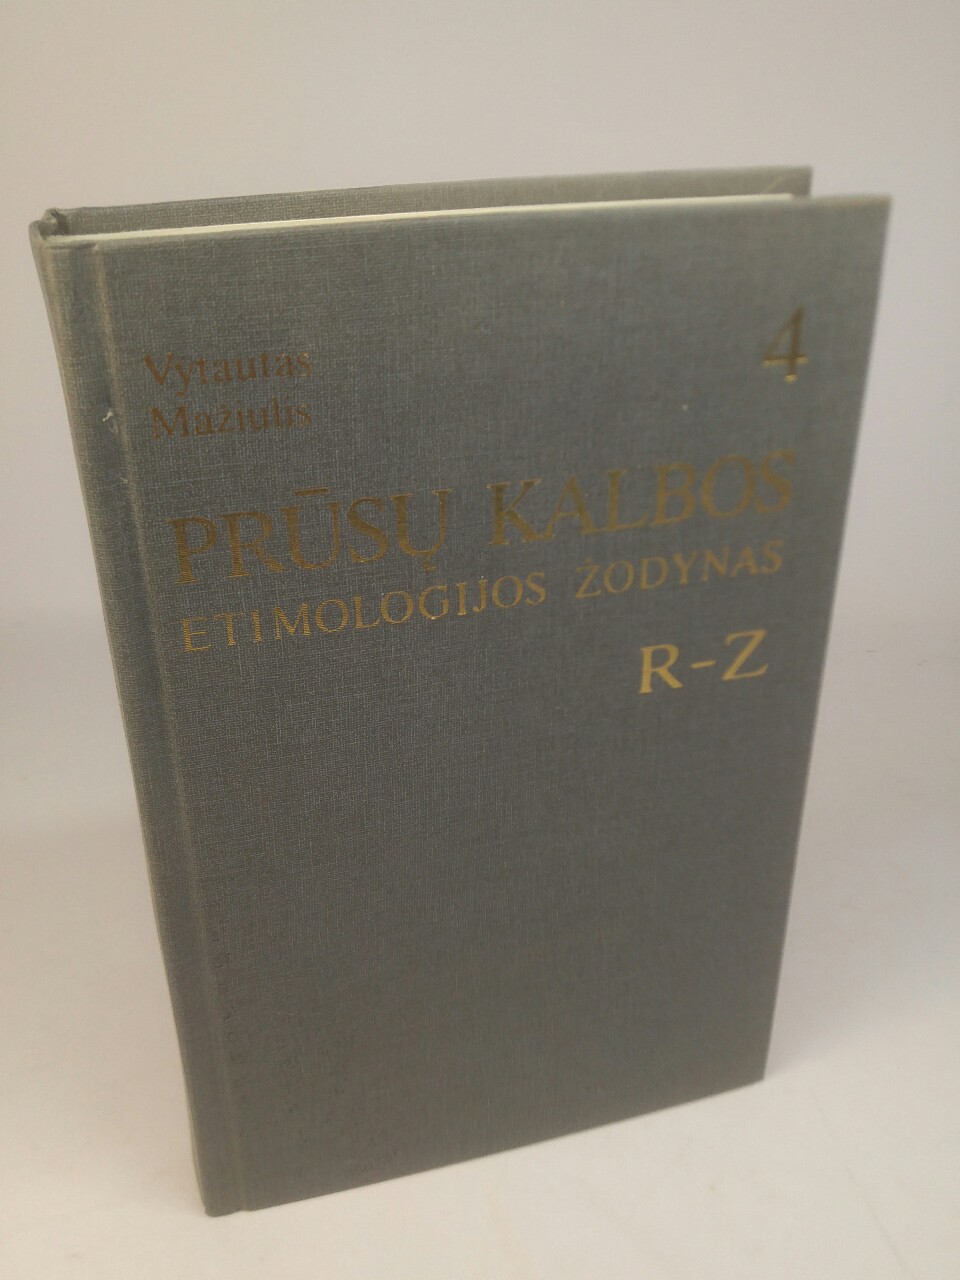 Altpreußisches etymologisches Wörterbuch. Prusu kalbos etimologijos zodynas. Band 4: R-Z. - Maziulis, Vytautas